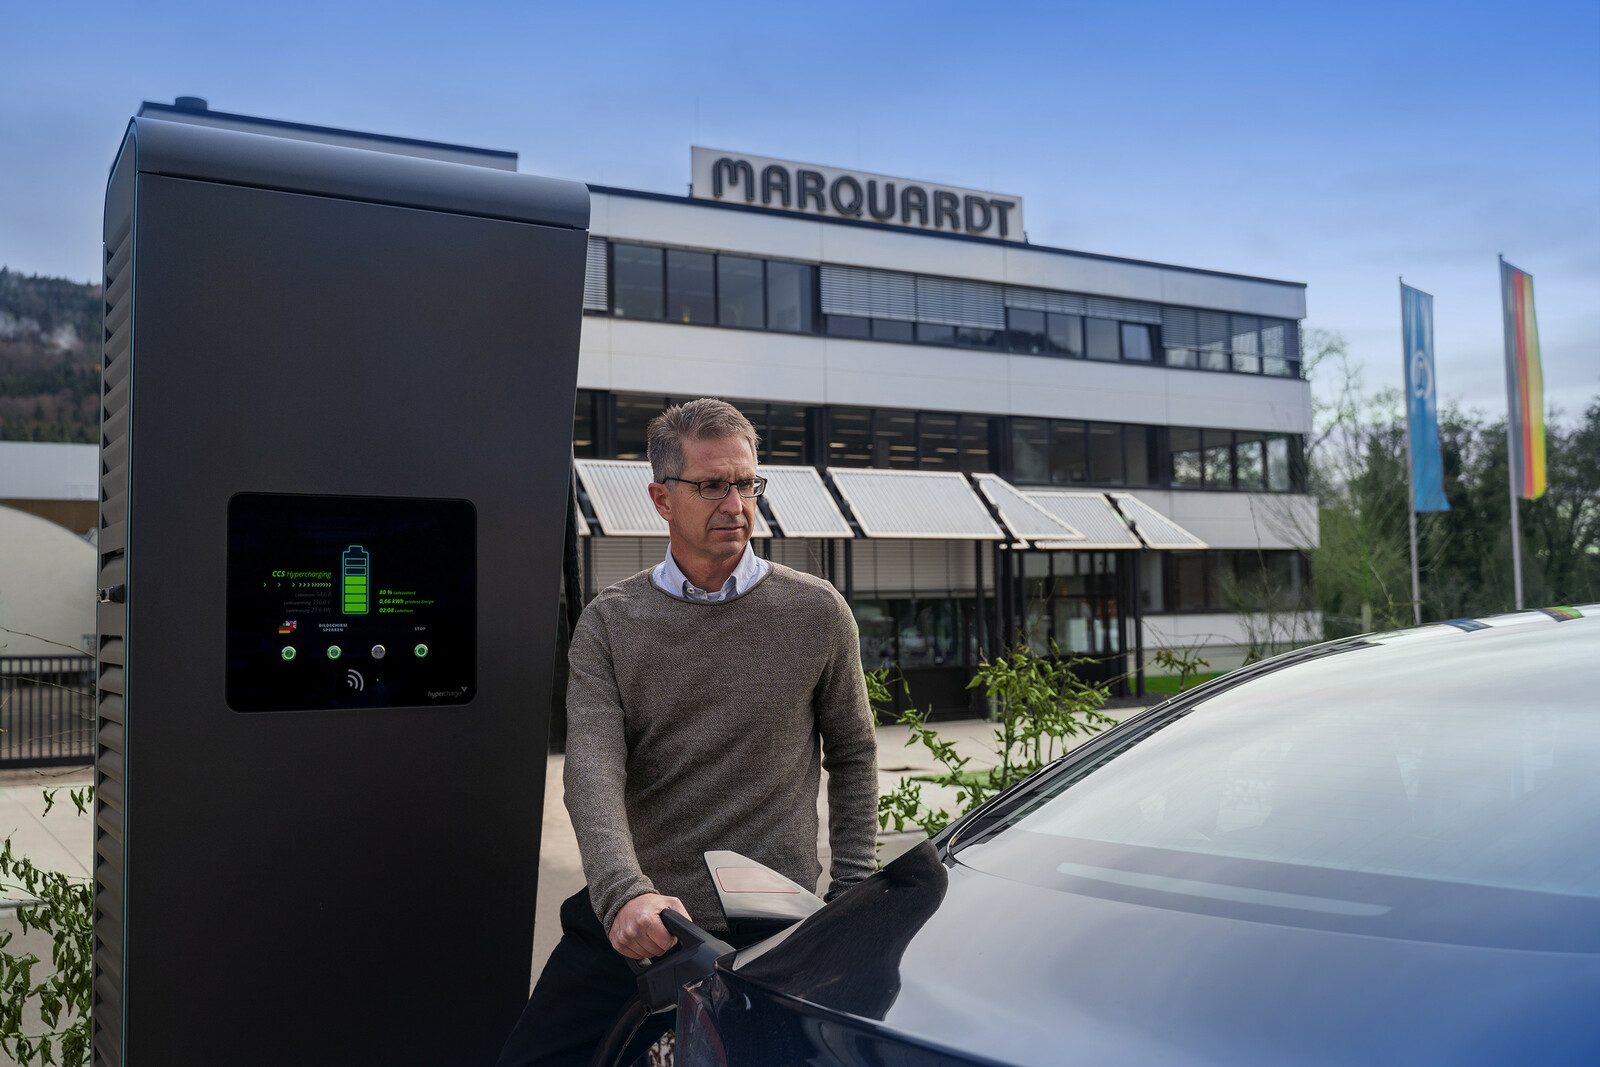 Jochen Schweickhardt, Prokurist und Nachhaltigkeitsbeauftragter bei Marquardt, beim Laden eines E-Autos.